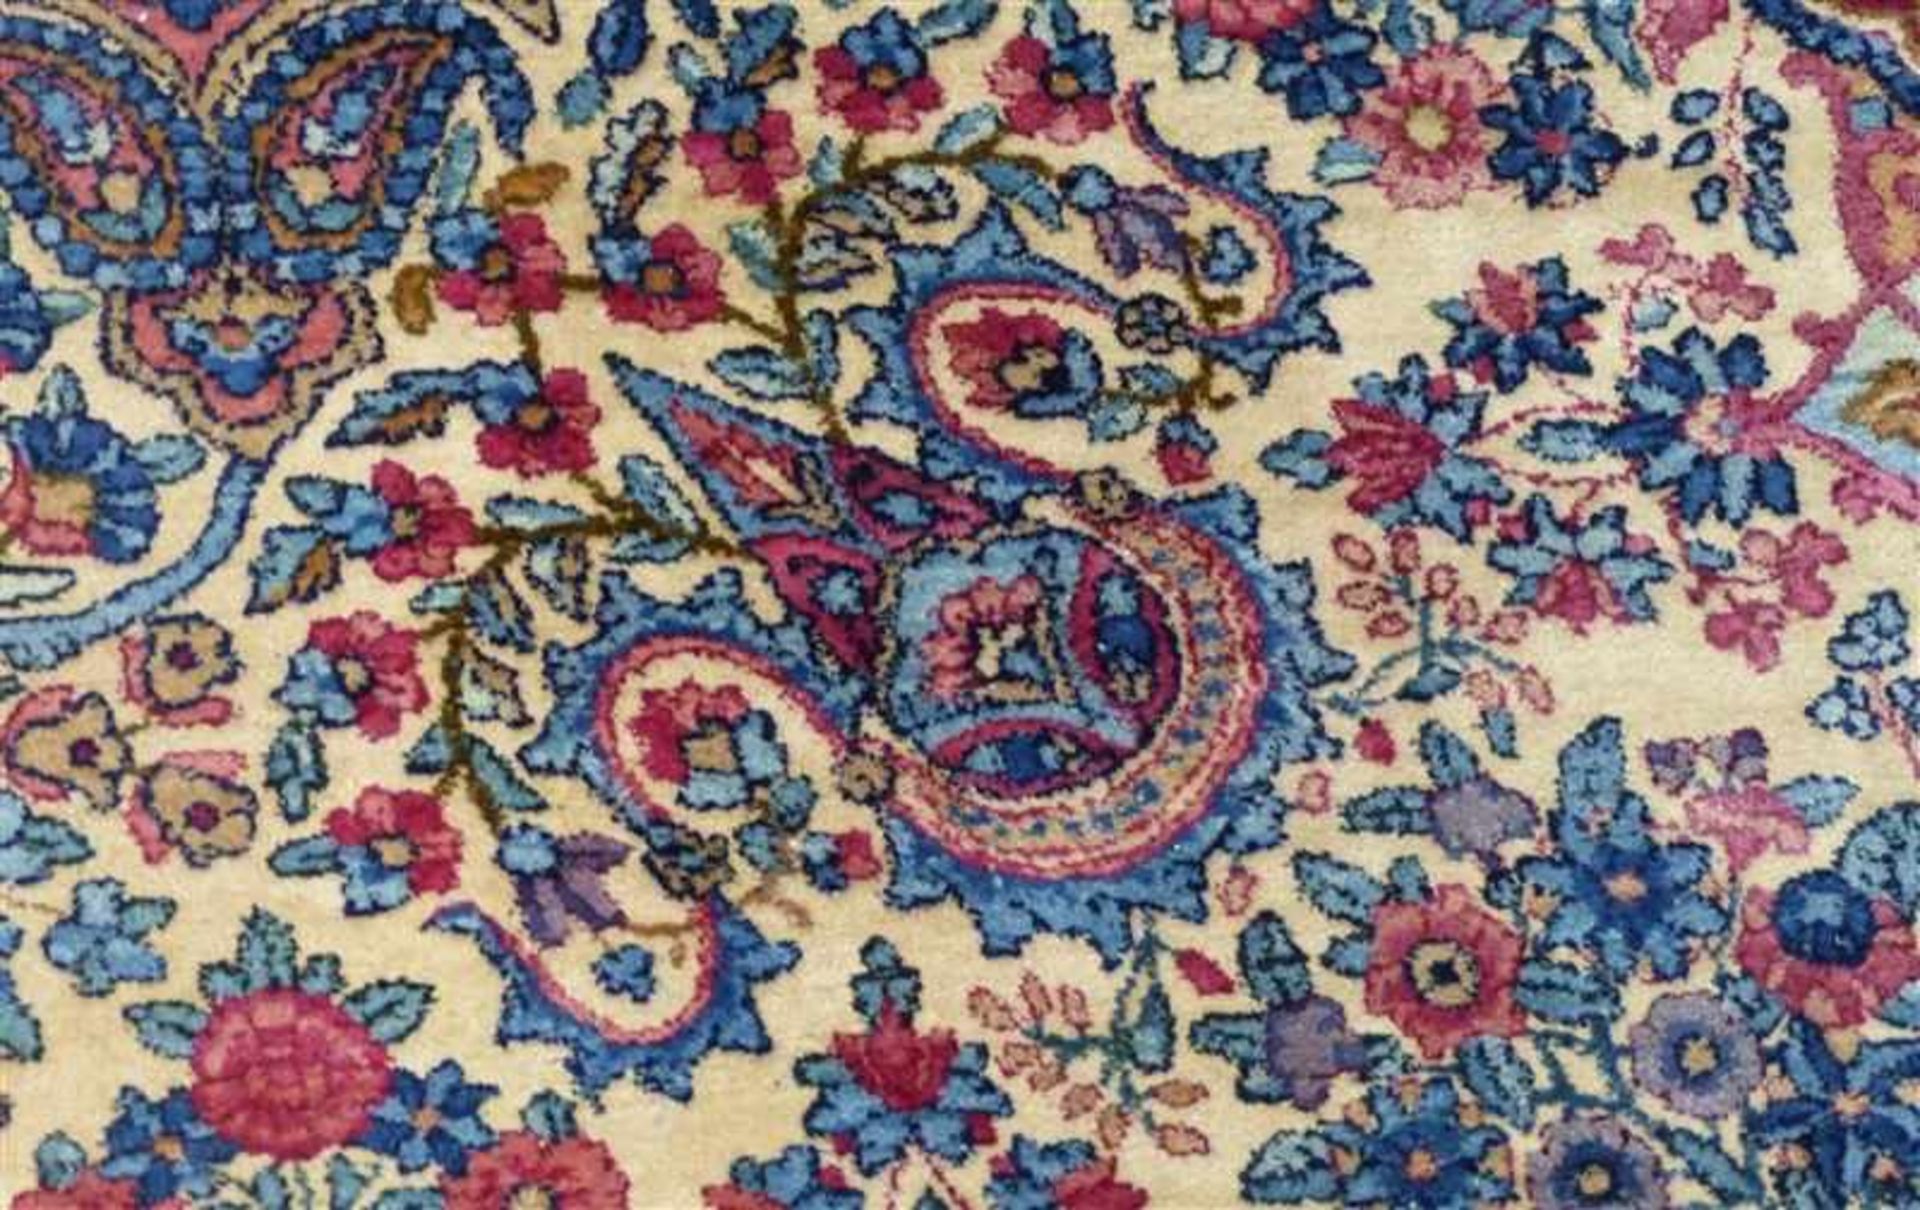 Täbris, altblau-beige grundig, Mittelmedaillon, florales Dekor, teilweise mit Abrash, seltene Größe, - Bild 7 aus 7